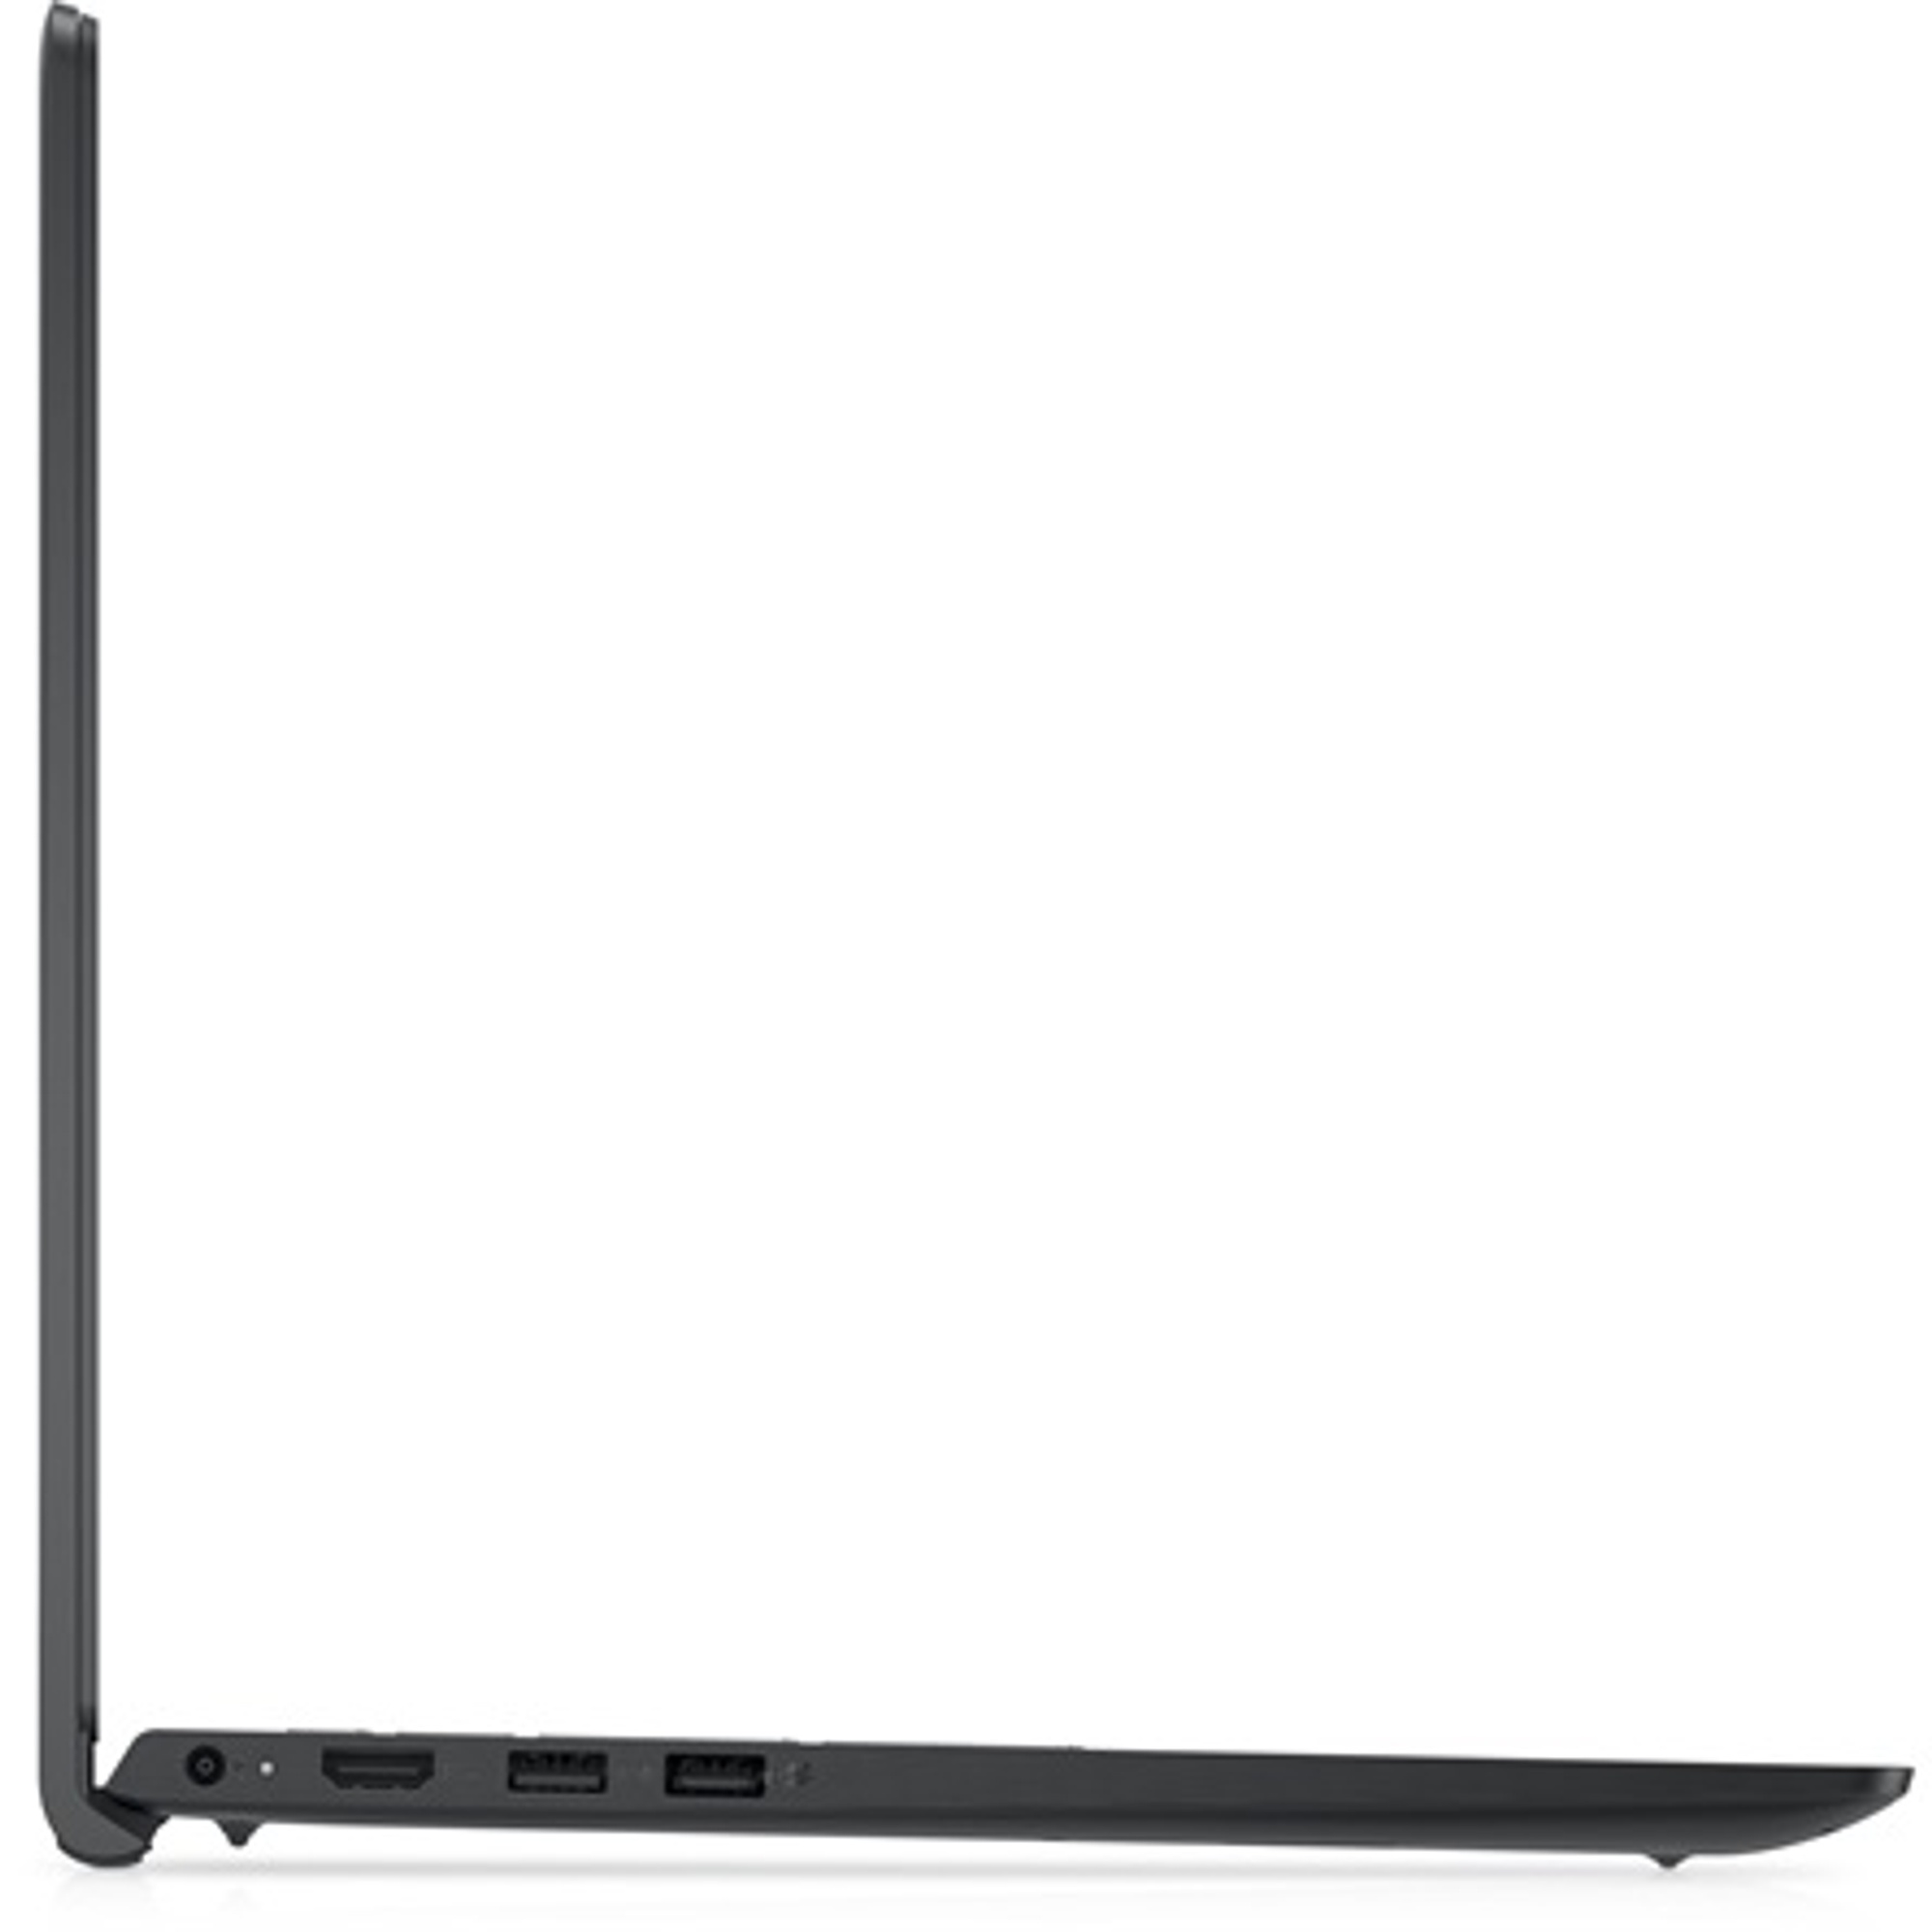 DELL V3520-15 Laptop / Notebook 3